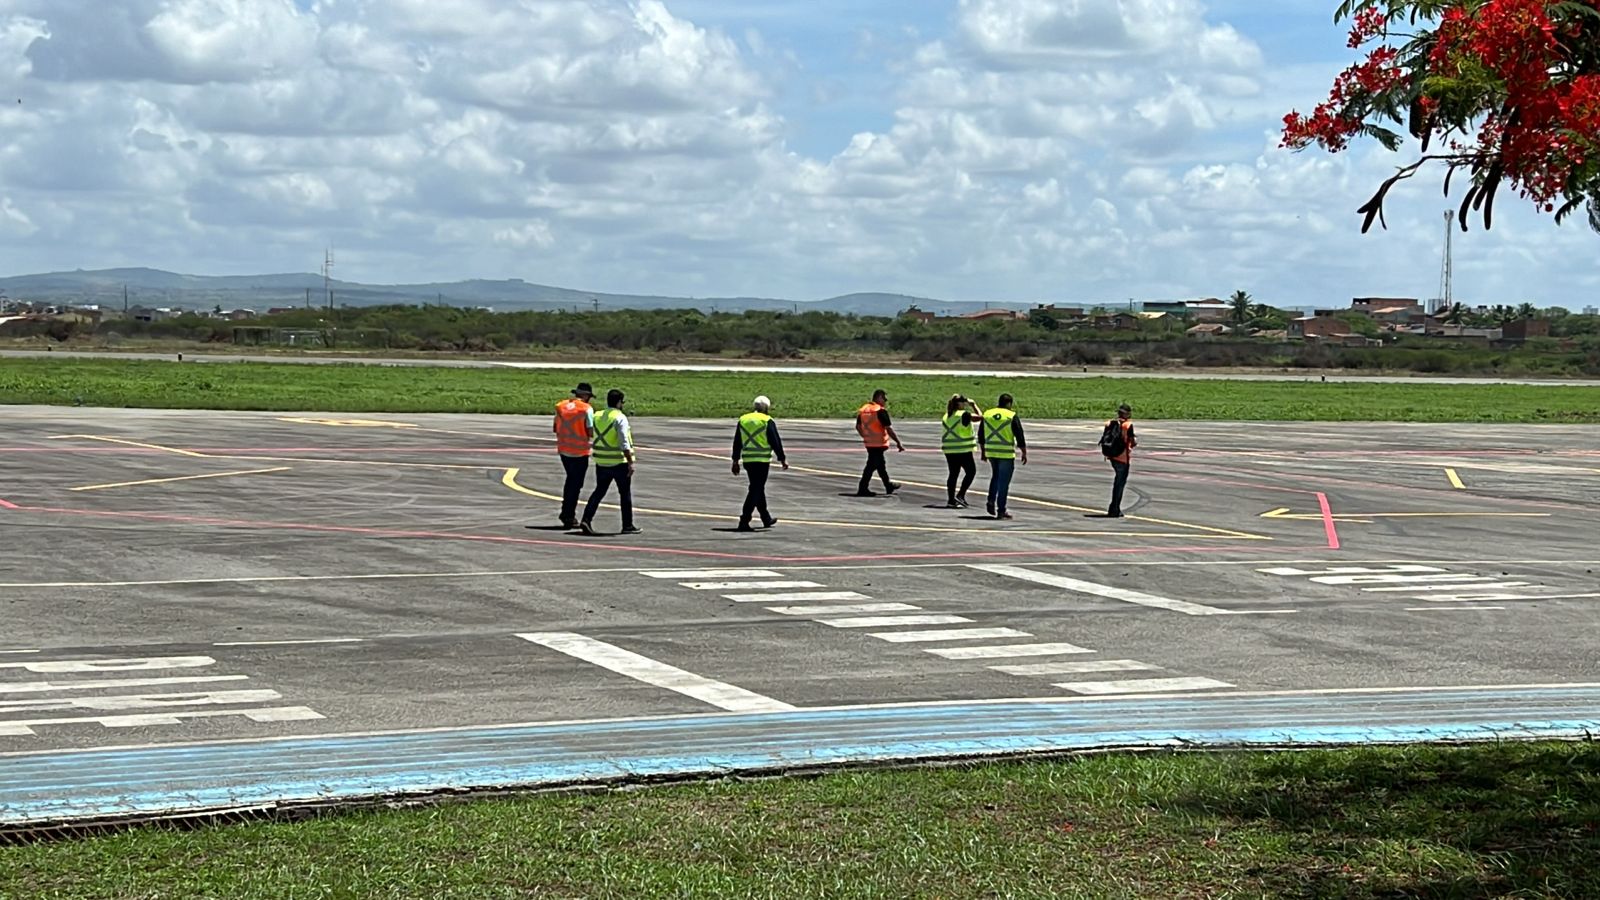 Aeroporto-de-Caruaru-1-foto-Edvaldo-Magalhaes.jpg